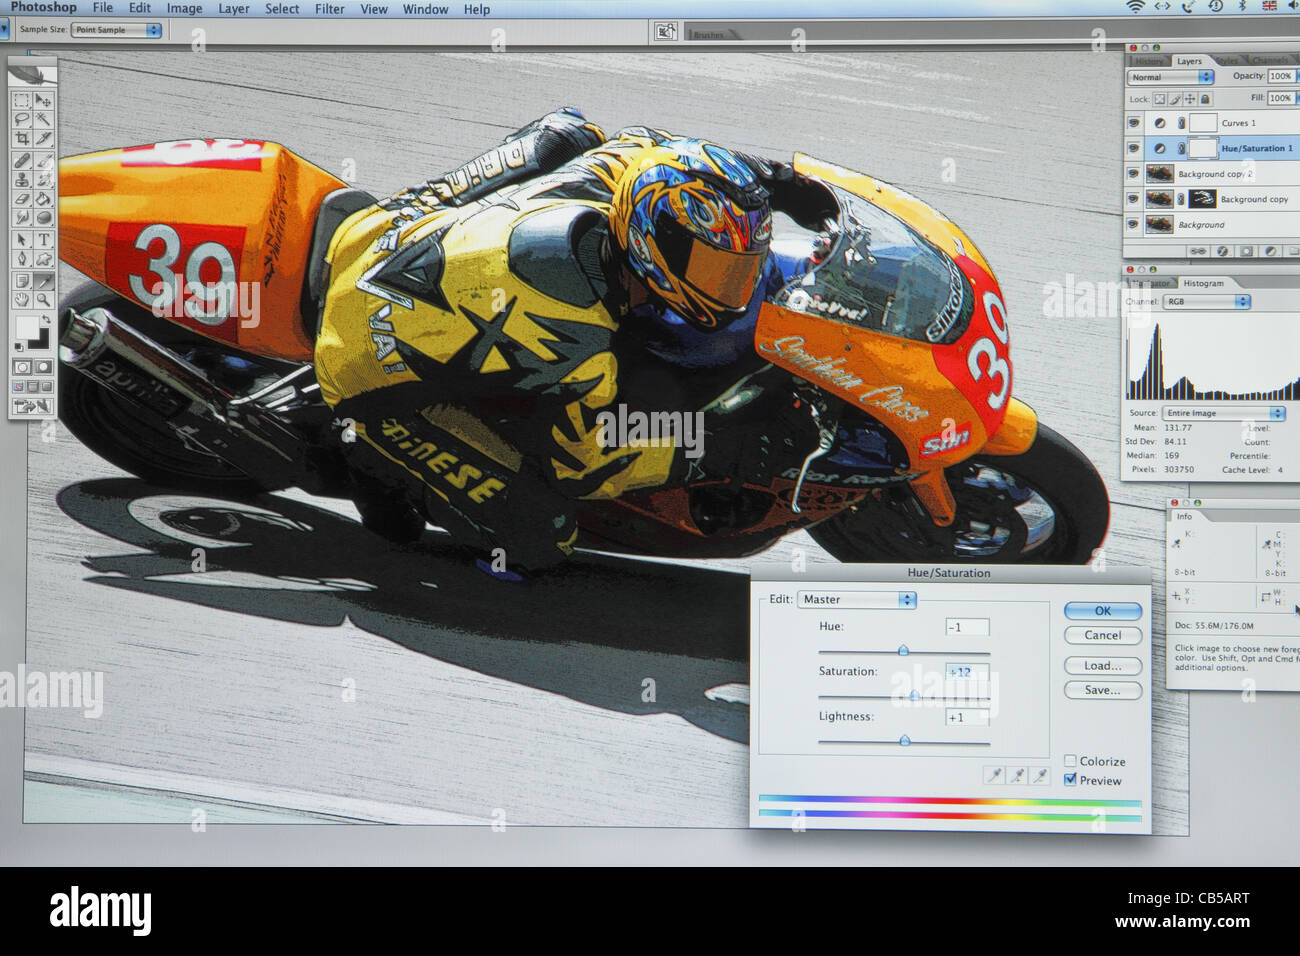 Fotos in Adobe Photoshop bearbeitet wird. Originalbild A185T7. Fertige Bild bei A698YA Stockfoto